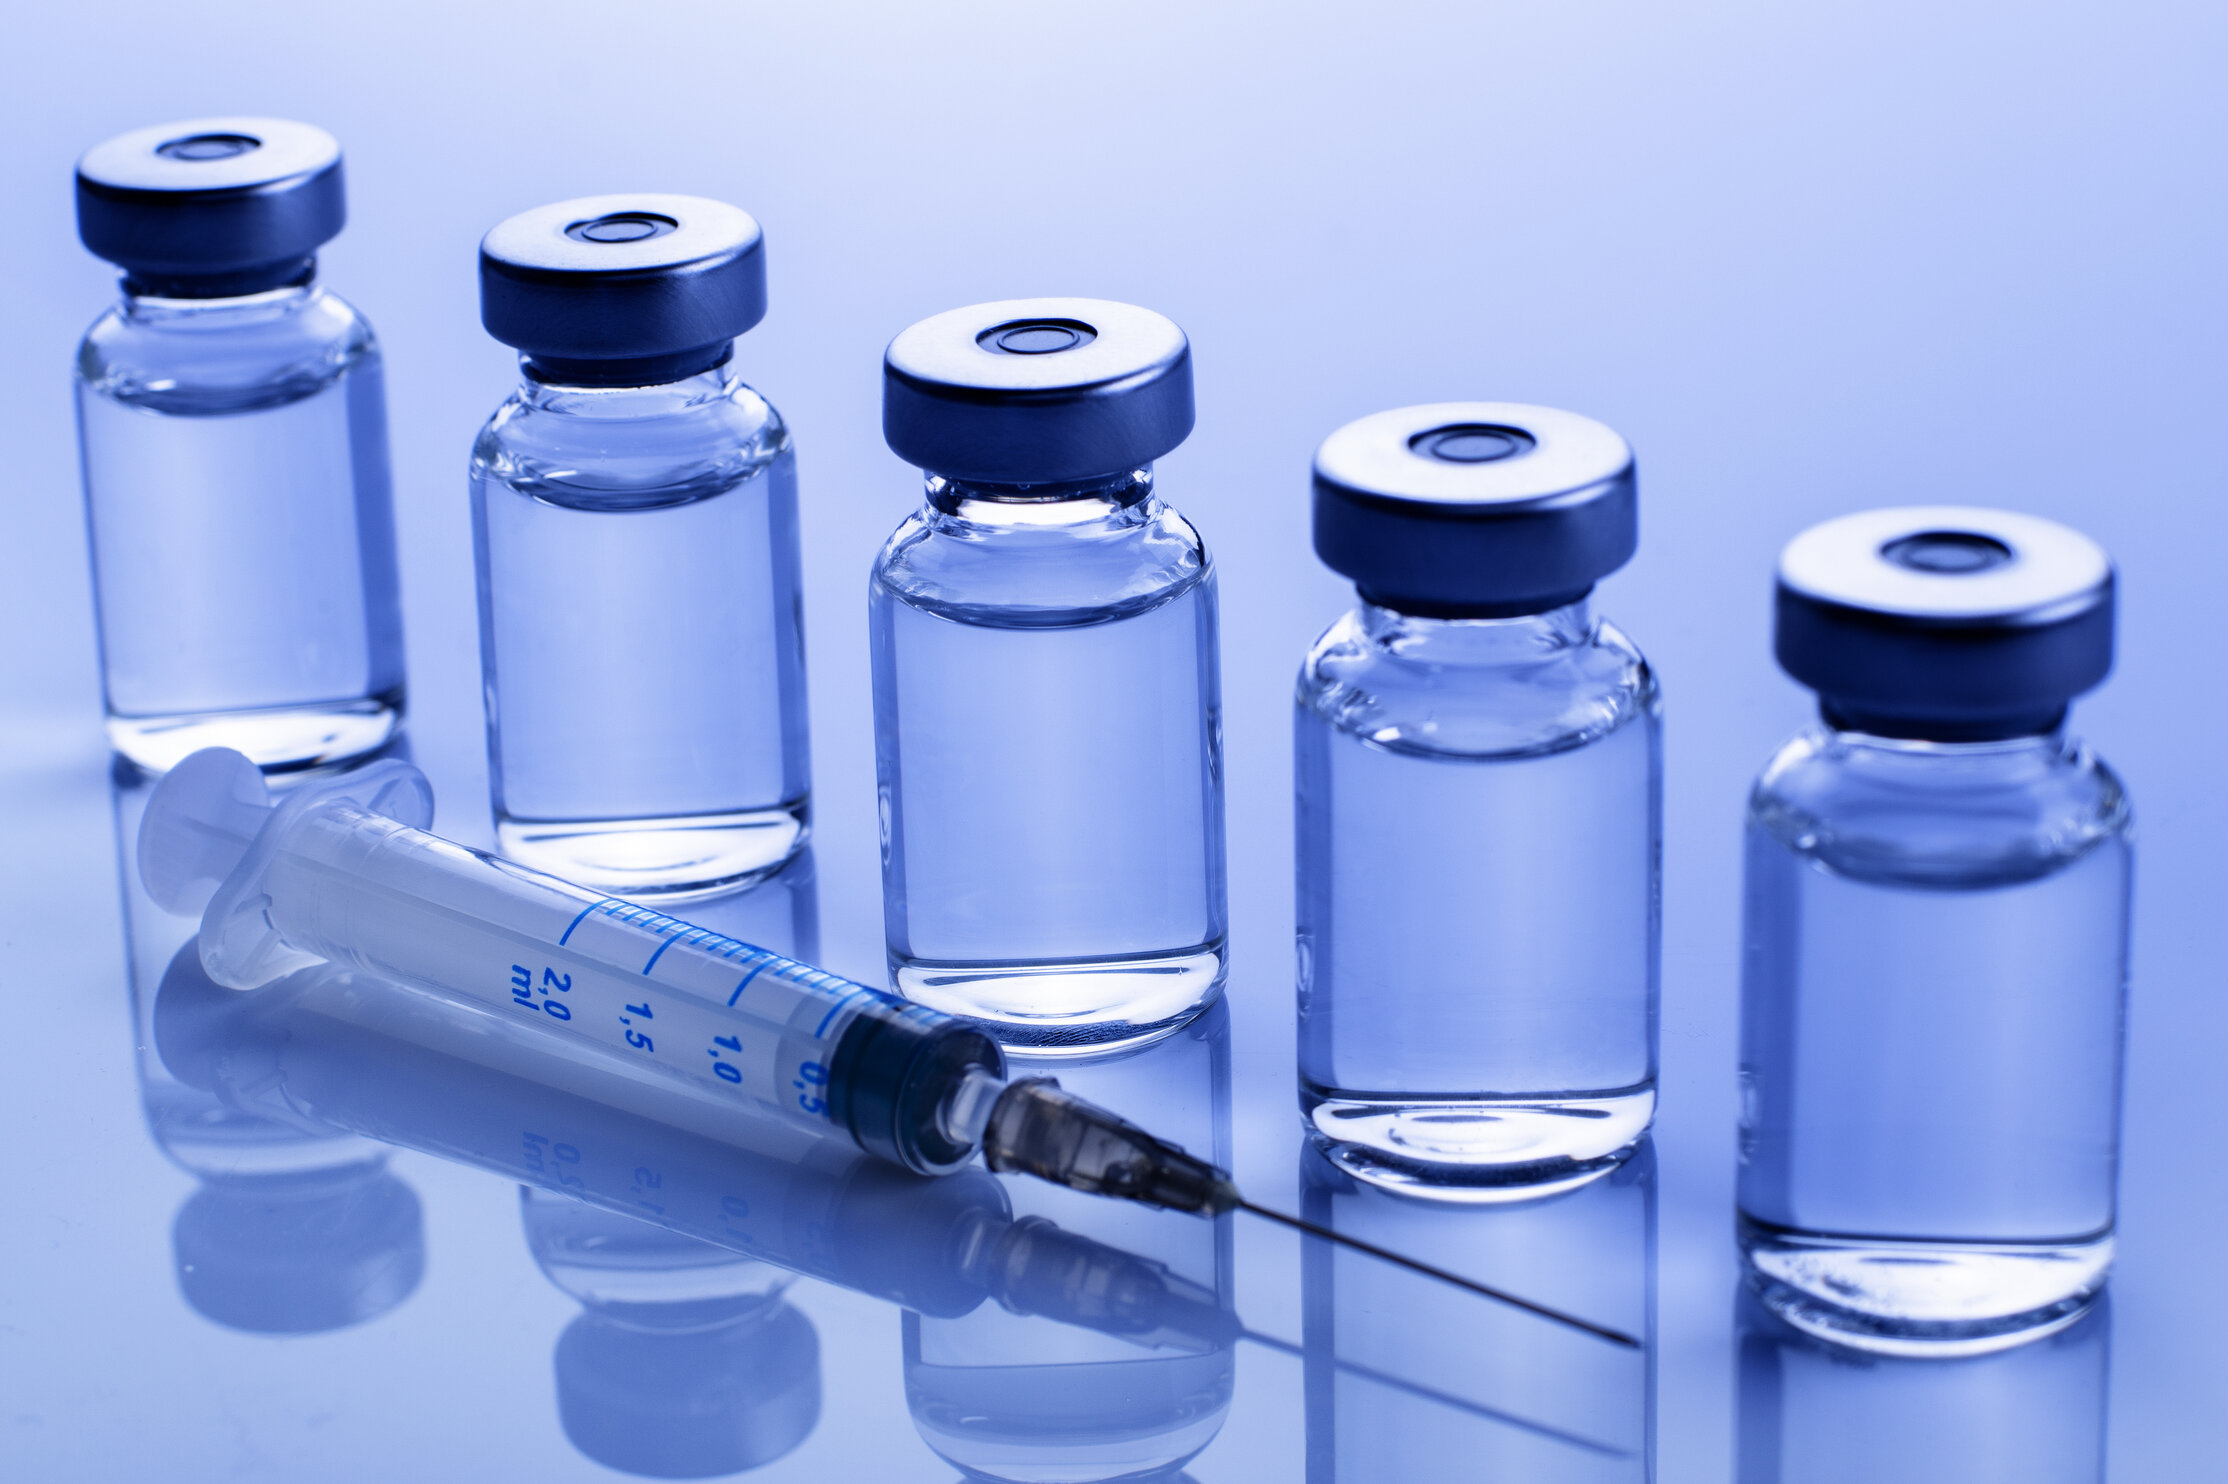 Cinci tipuri de vaccin anti-Covid au fost deja dezvoltate. Ce le diferențiază și cum acționează fiecare